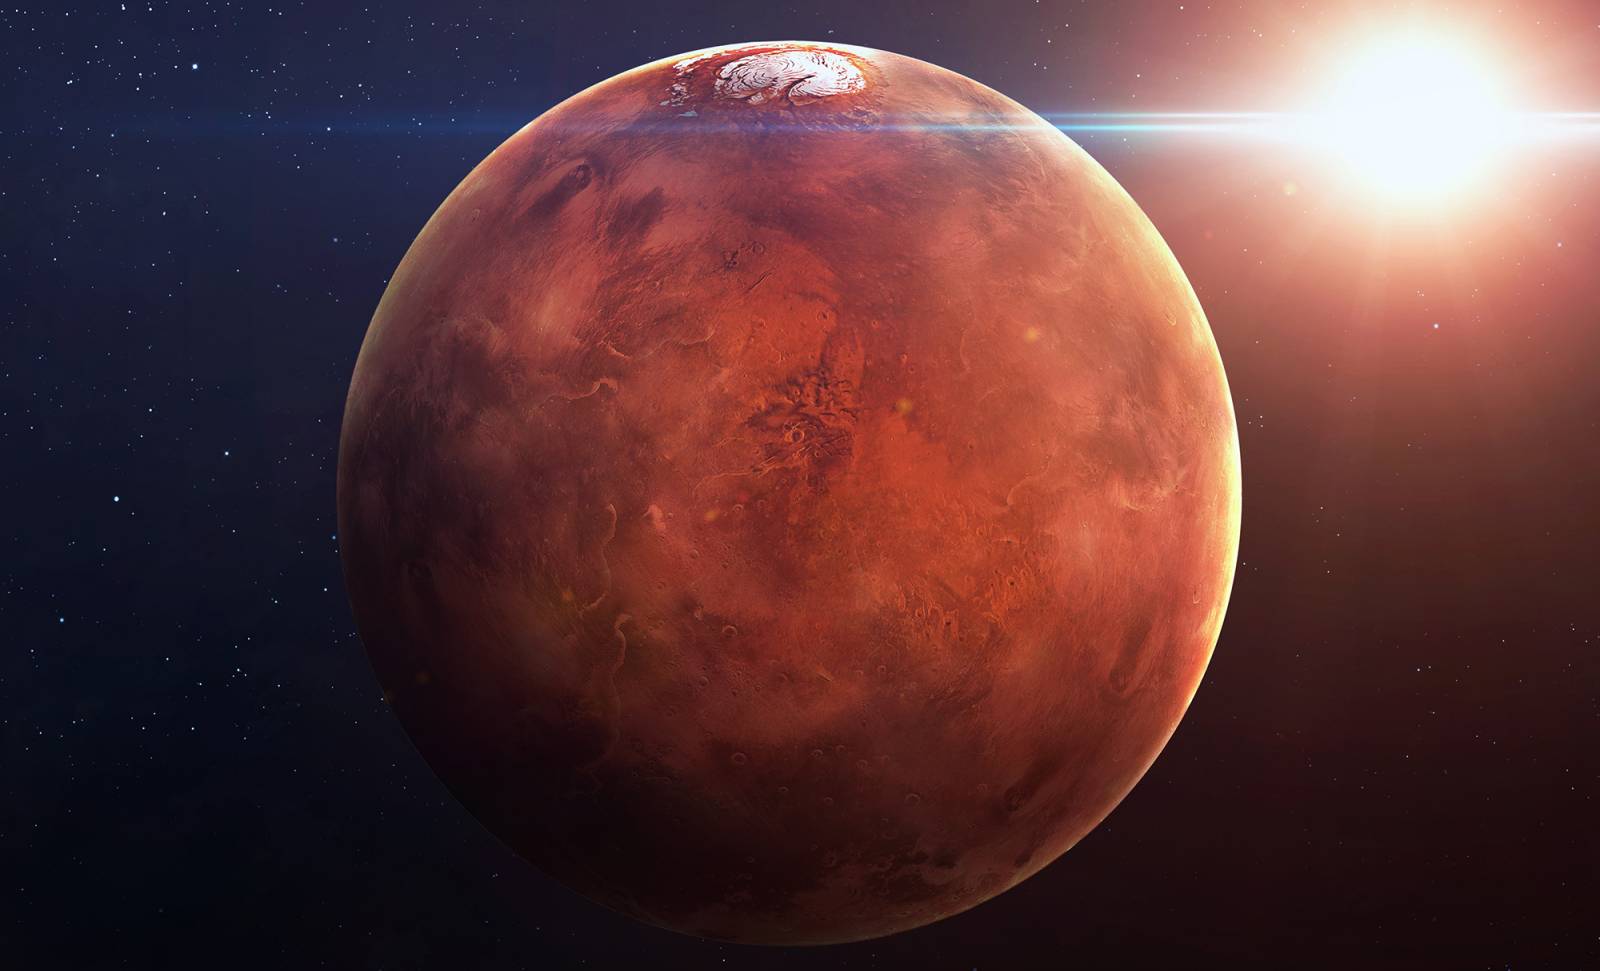 L'incroyable image de la planète Mars publiée par la NASA